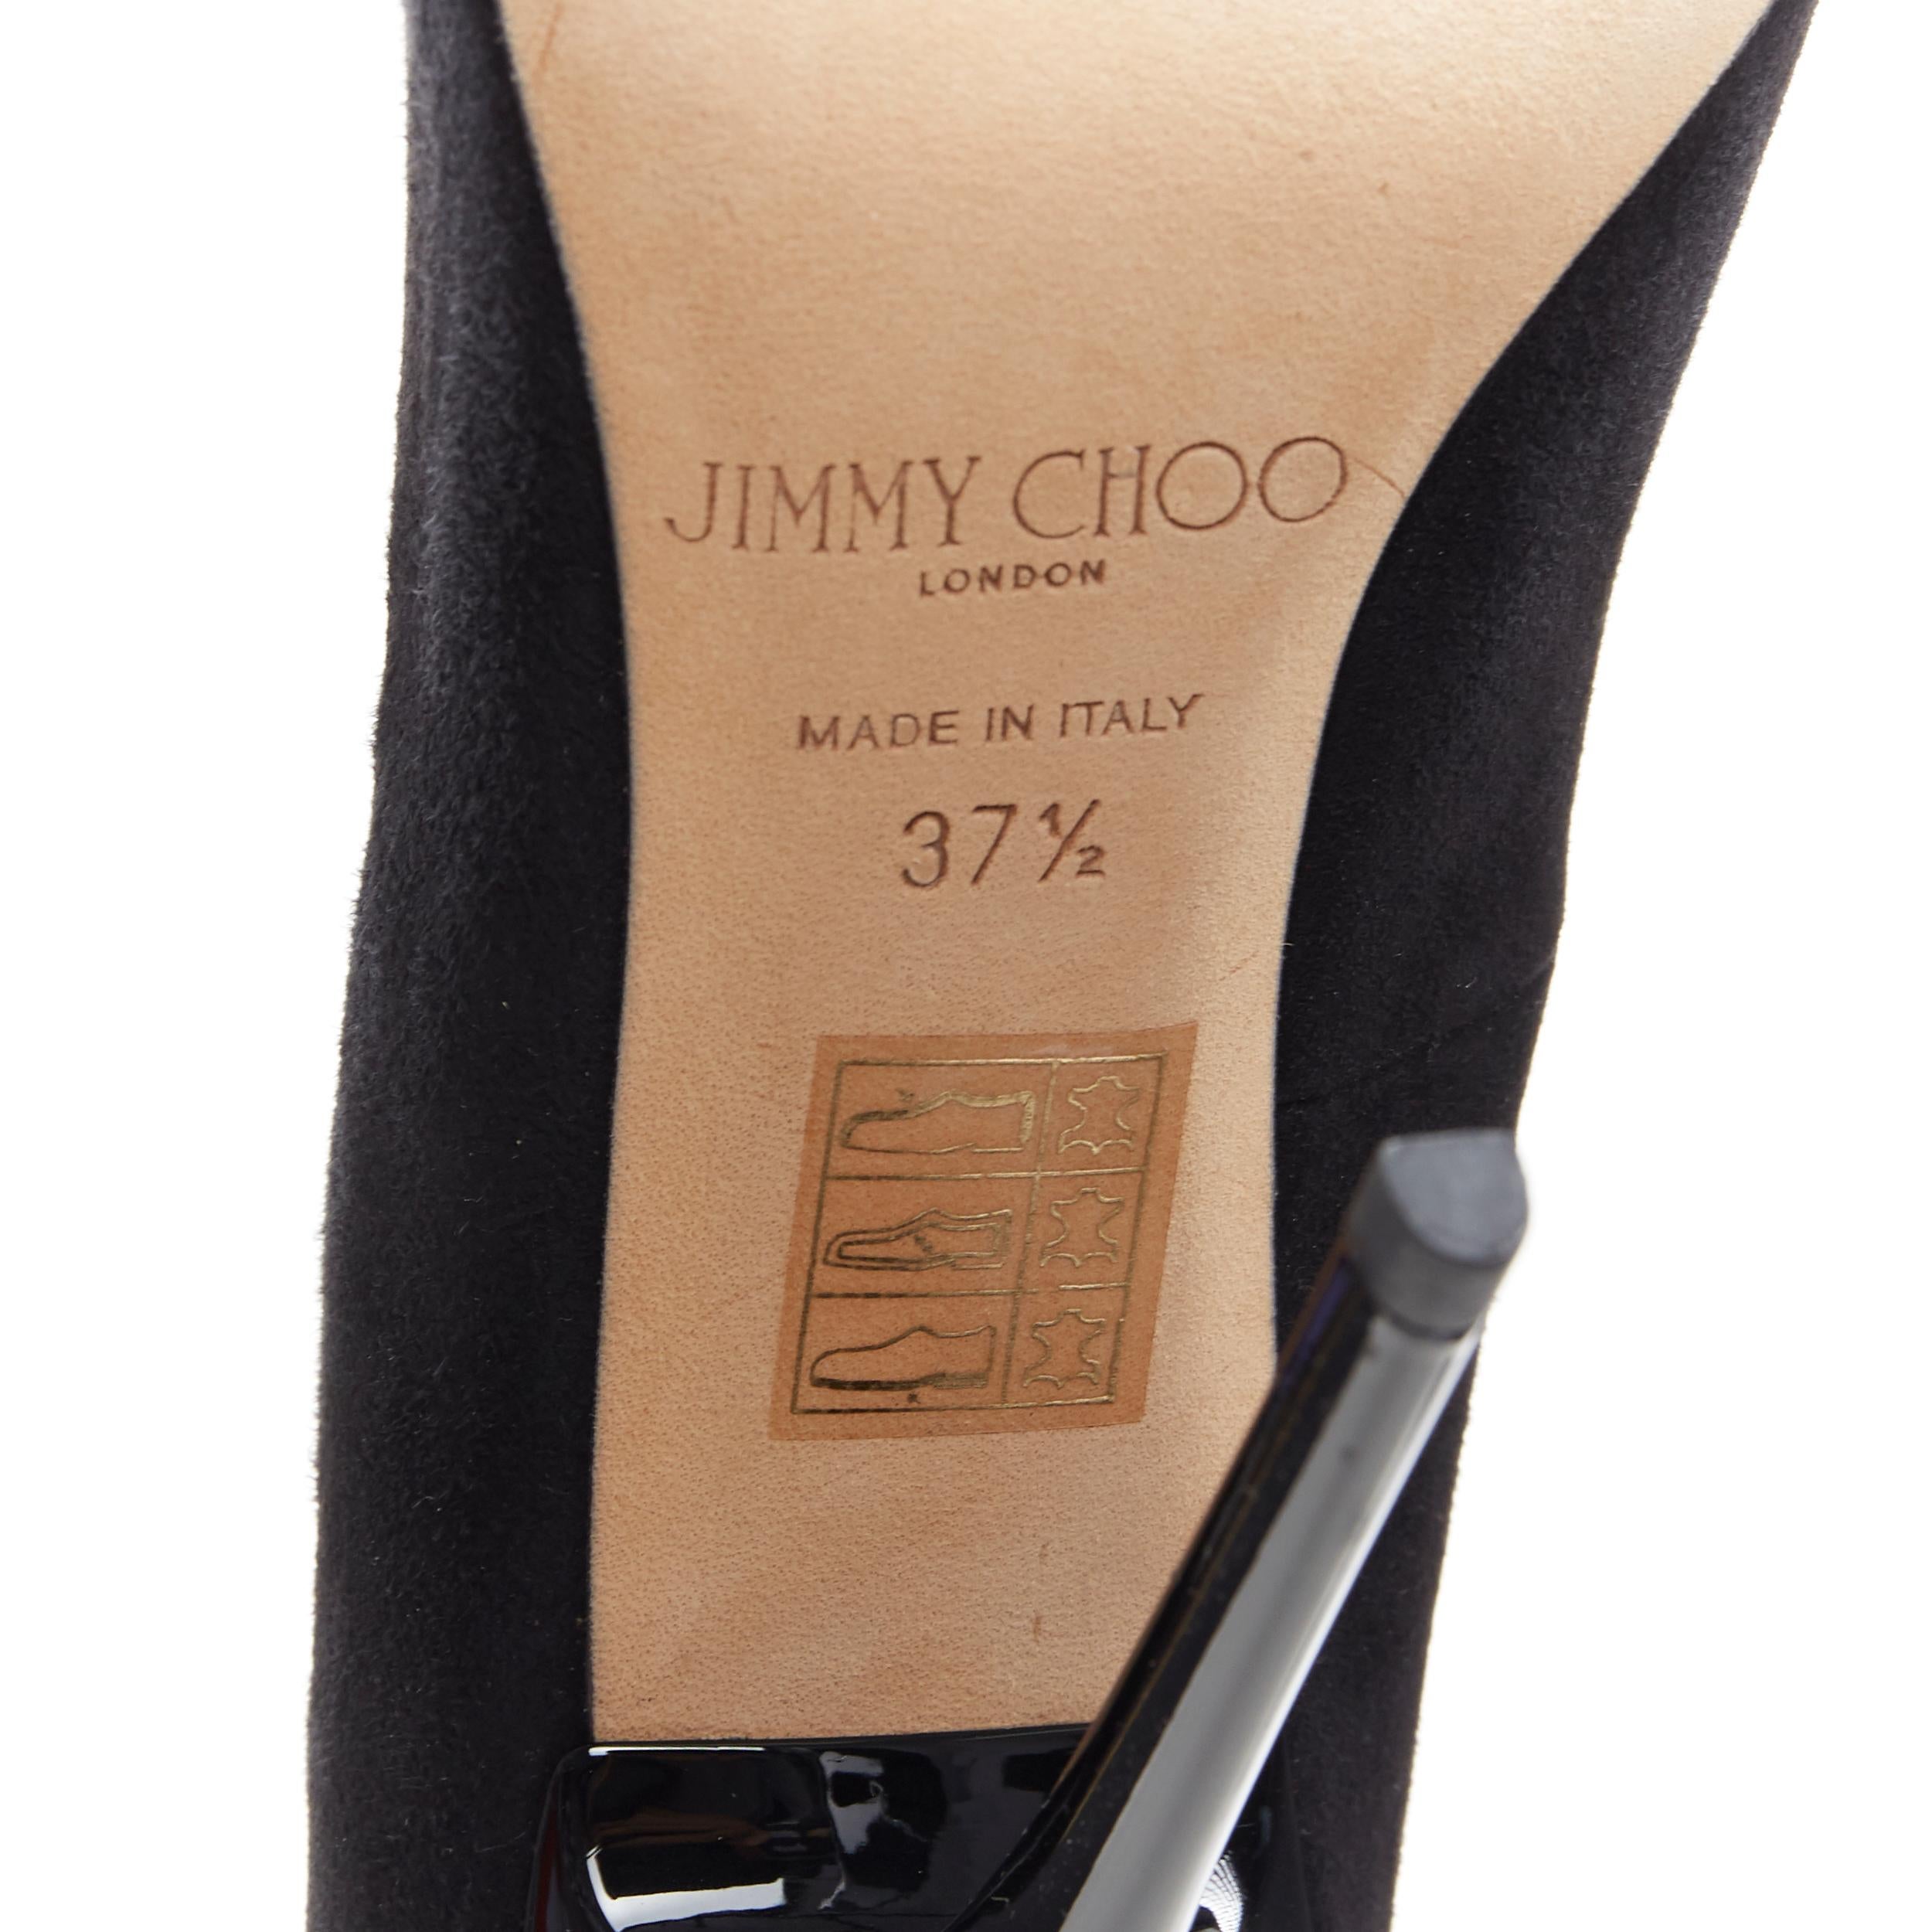 nouveau JIMMY CHOO Anouk 120 escarpin stiletto en daim noir à bout pointu EU37.5 6